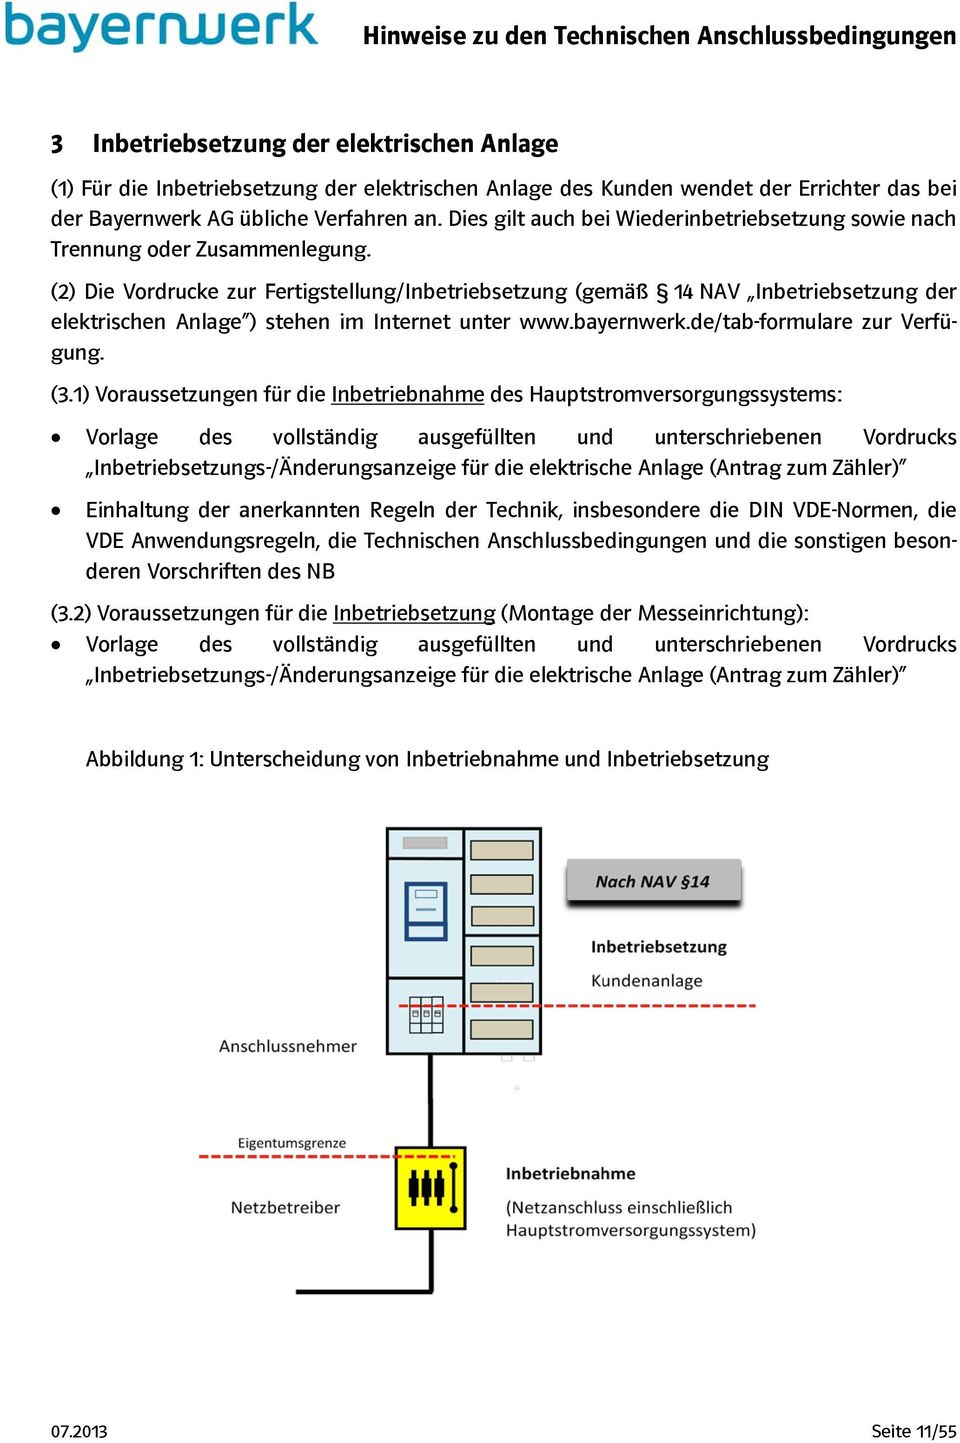 (2) Die Vordrucke zur Fertigstellung/Inbetriebsetzung (gemäß 14 NAV Inbetriebsetzung der elektrischen Anlage ) stehen im Internet unter www.bayernwerk.de/tab-formulare zur Verfügung. (3.